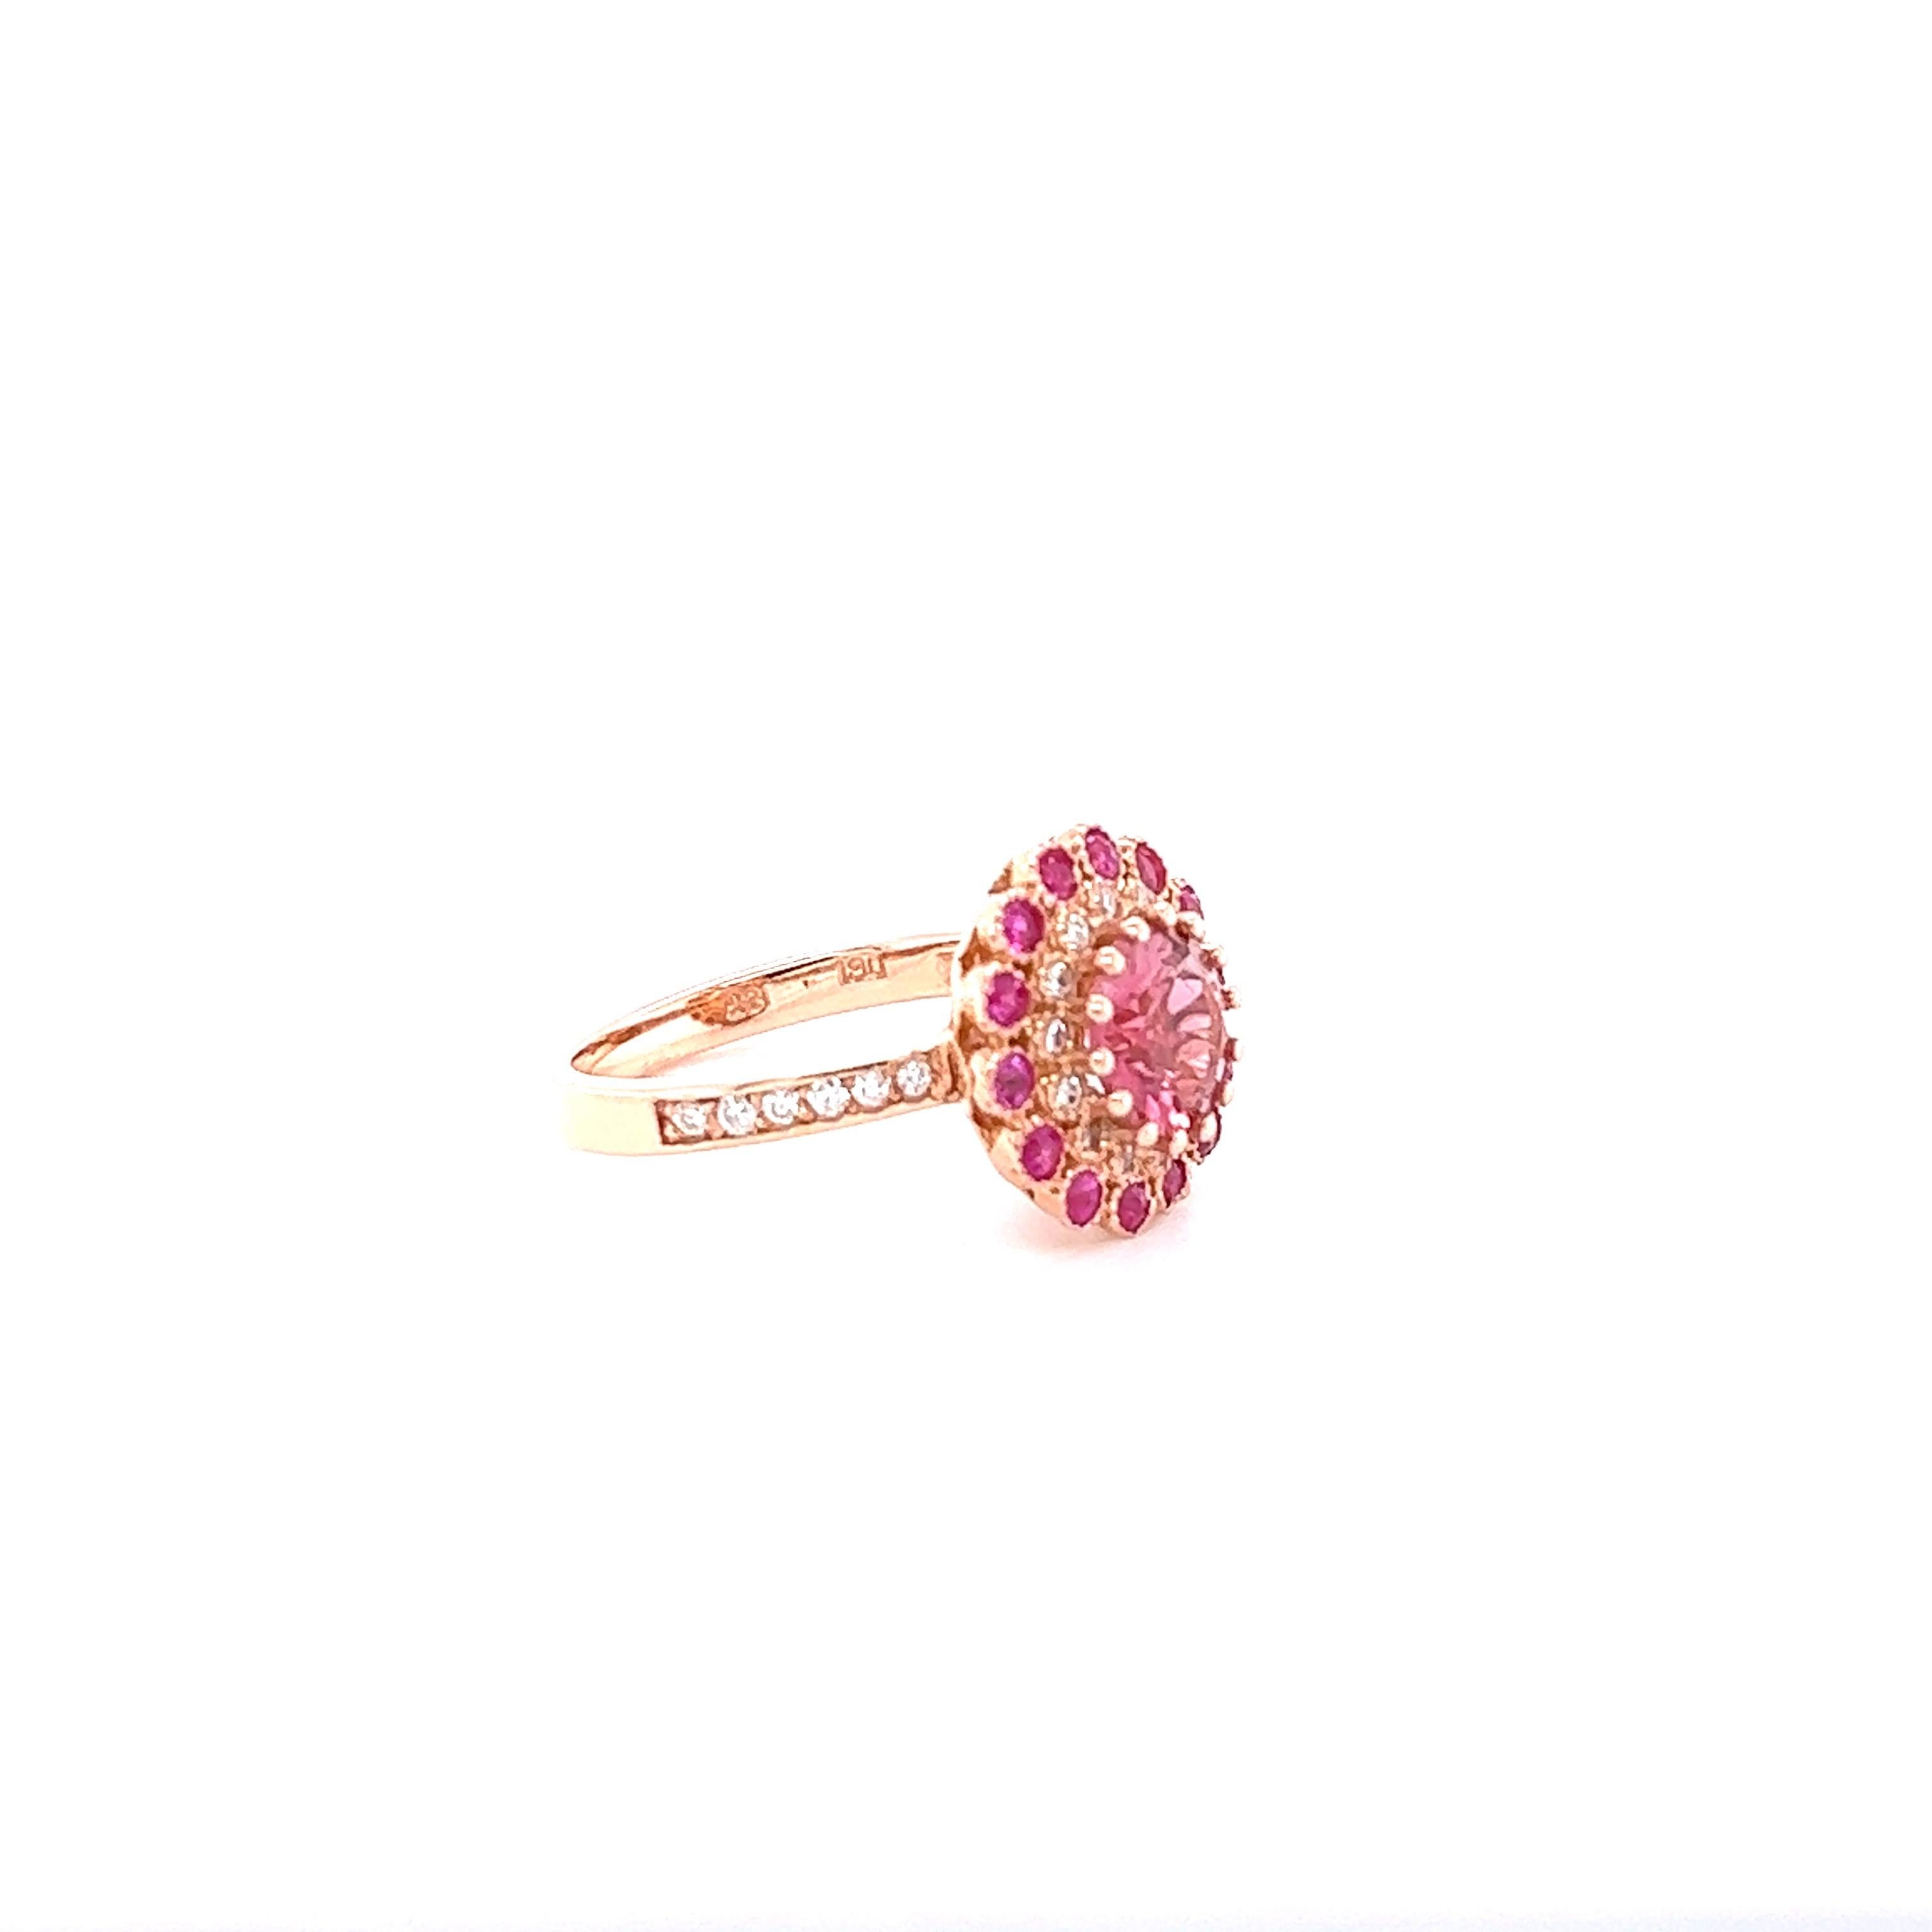 Diese Schönheit hat einen runden Schliff rosa Turmalin in der Mitte des Rings, die 1,79 Karat wiegt und misst bei 8 mm gesetzt.  Er ist umgeben von 14 rosa Saphiren im Rundschliff mit einem Gewicht von 0,54 Karat und 26 Diamanten im Rundschliff mit